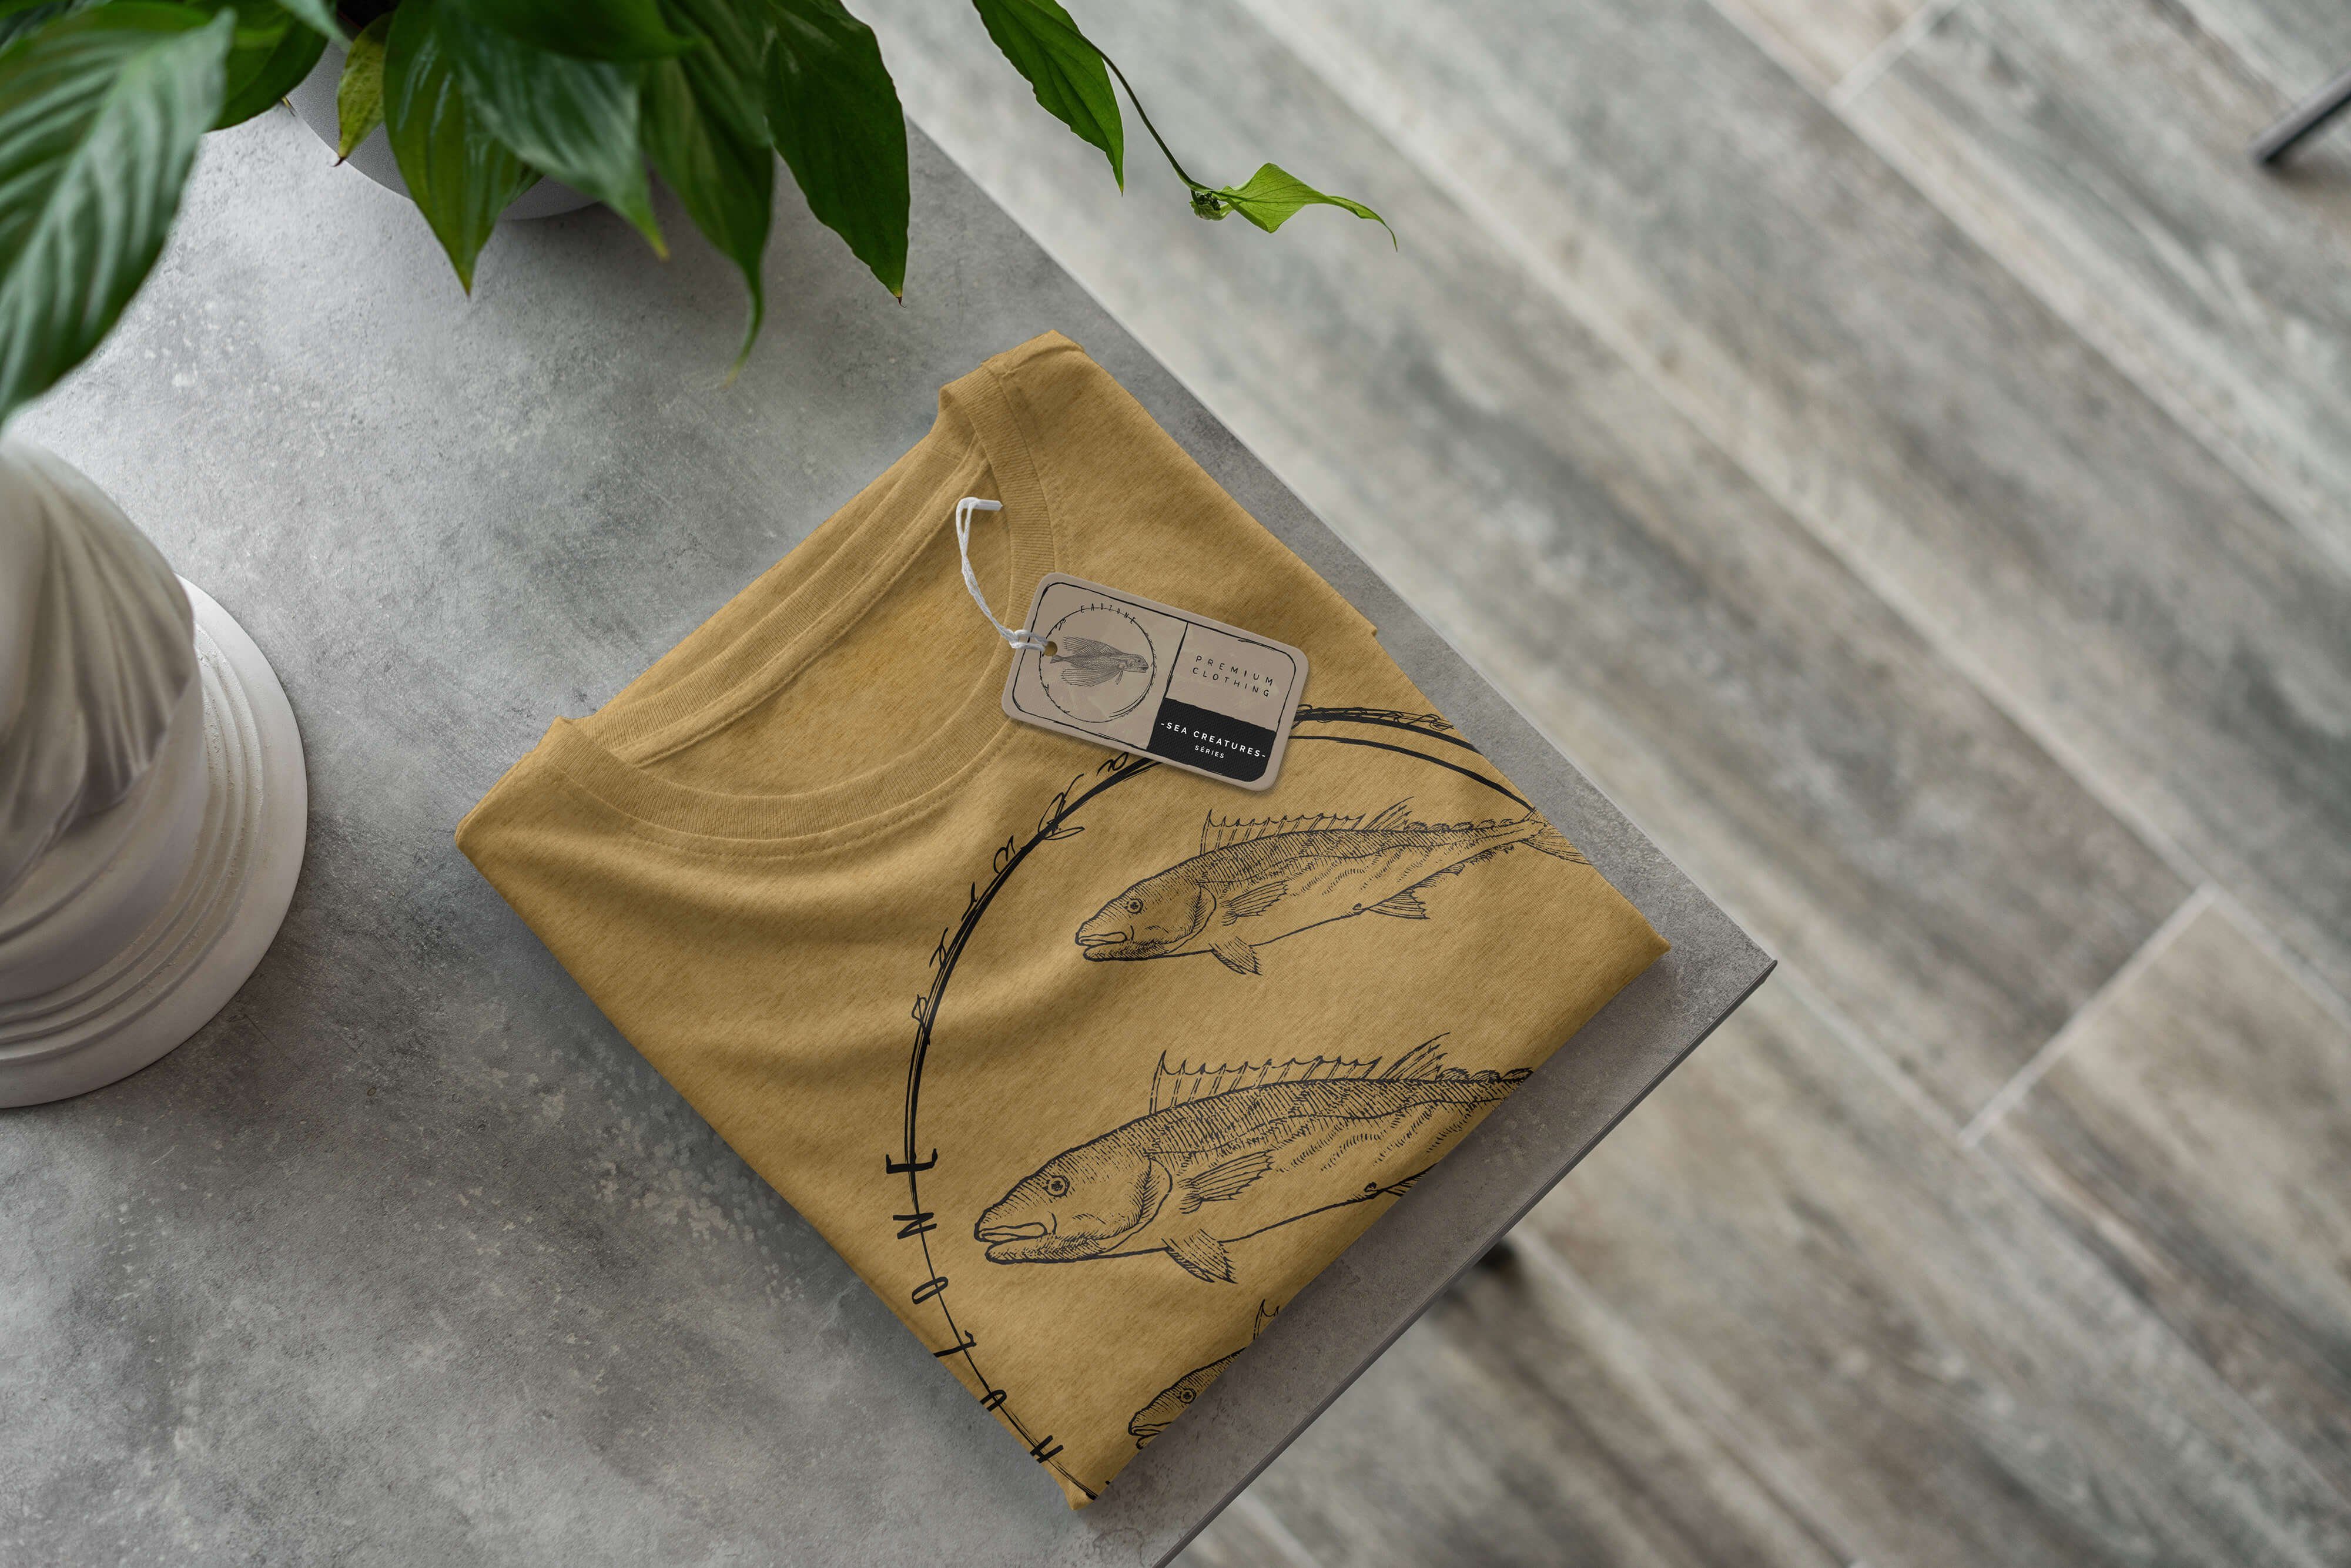 T-Shirt Gold Antique Sea T-Shirt Art feine - Fische Sea Serie: Struktur / Creatures, Schnitt und Sinus sportlicher 094 Tiefsee